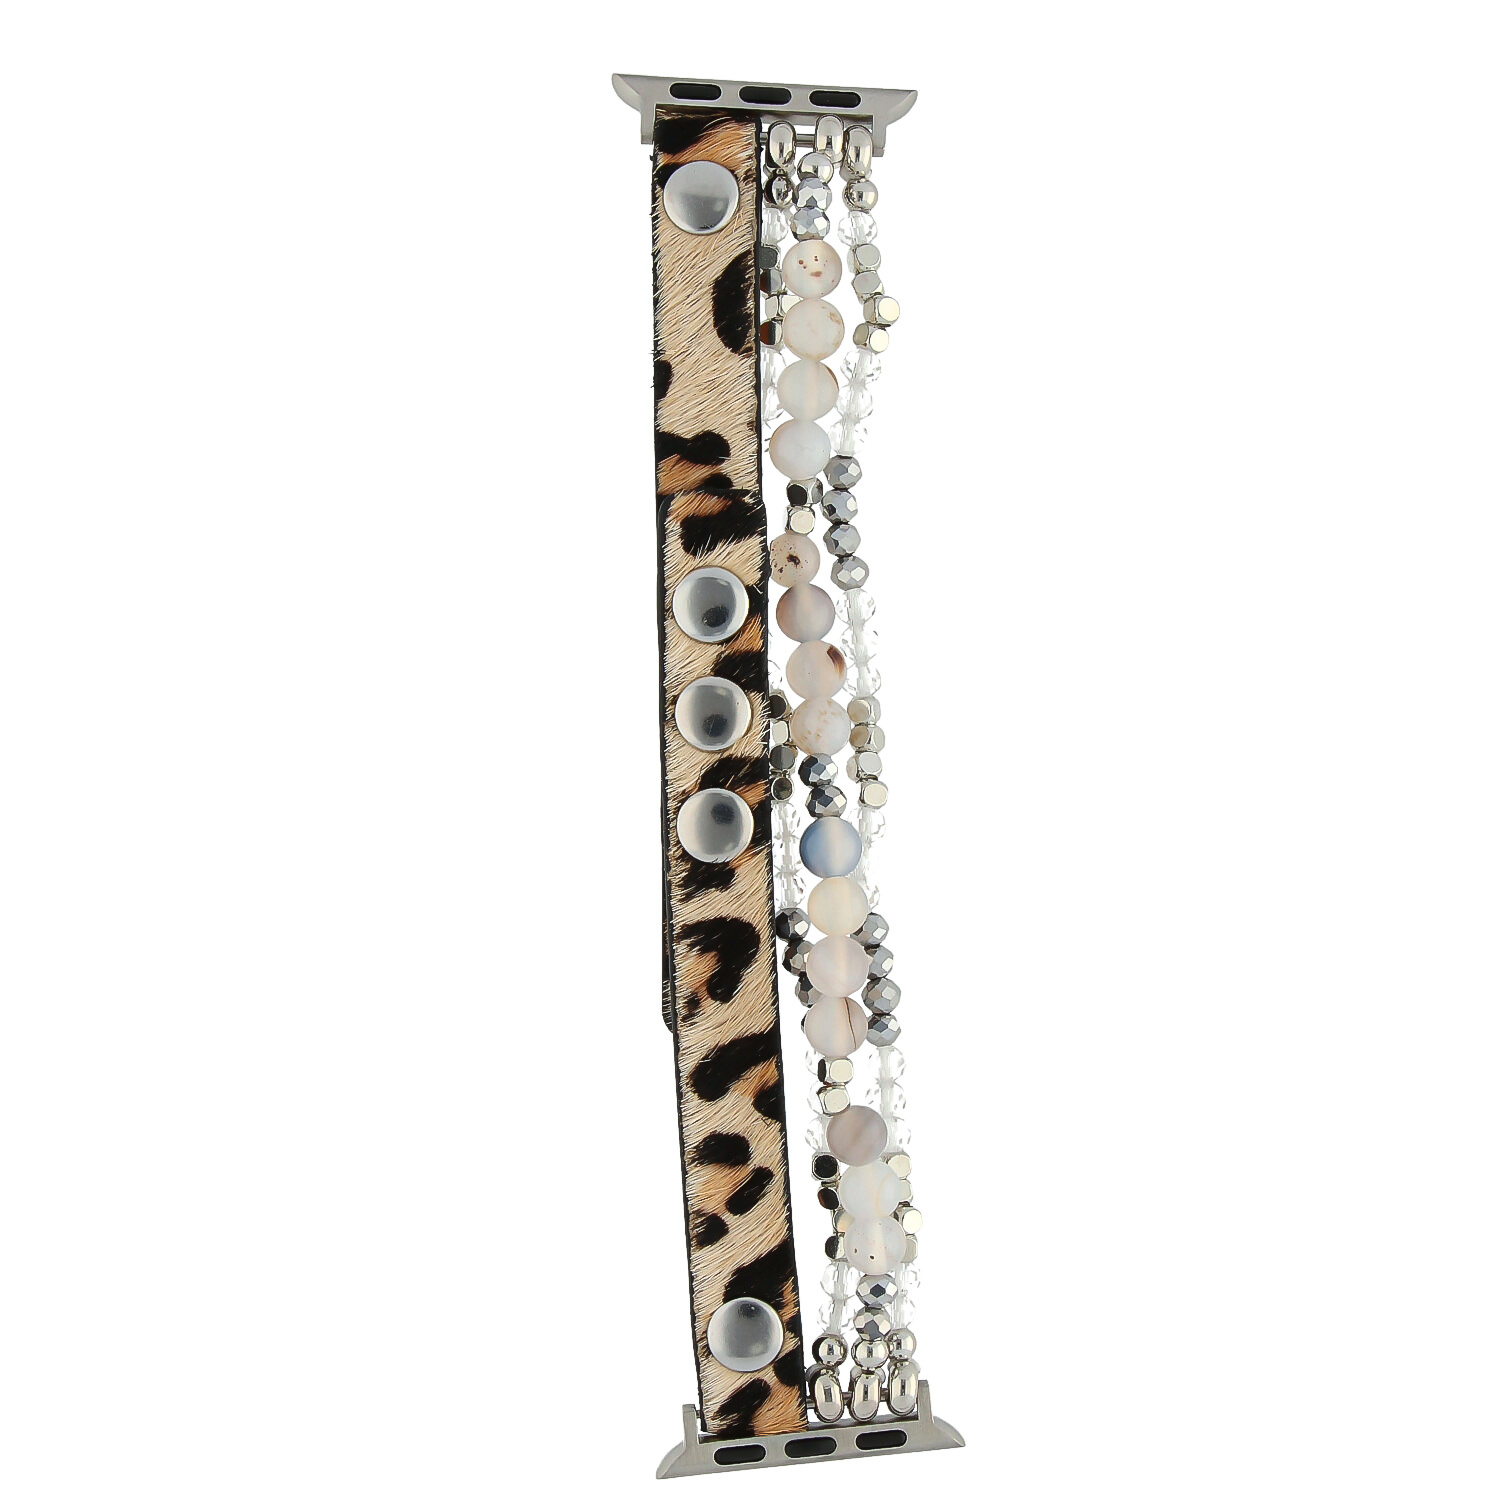 Correa de joyería de piel para el Apple Watch - plata leopardo